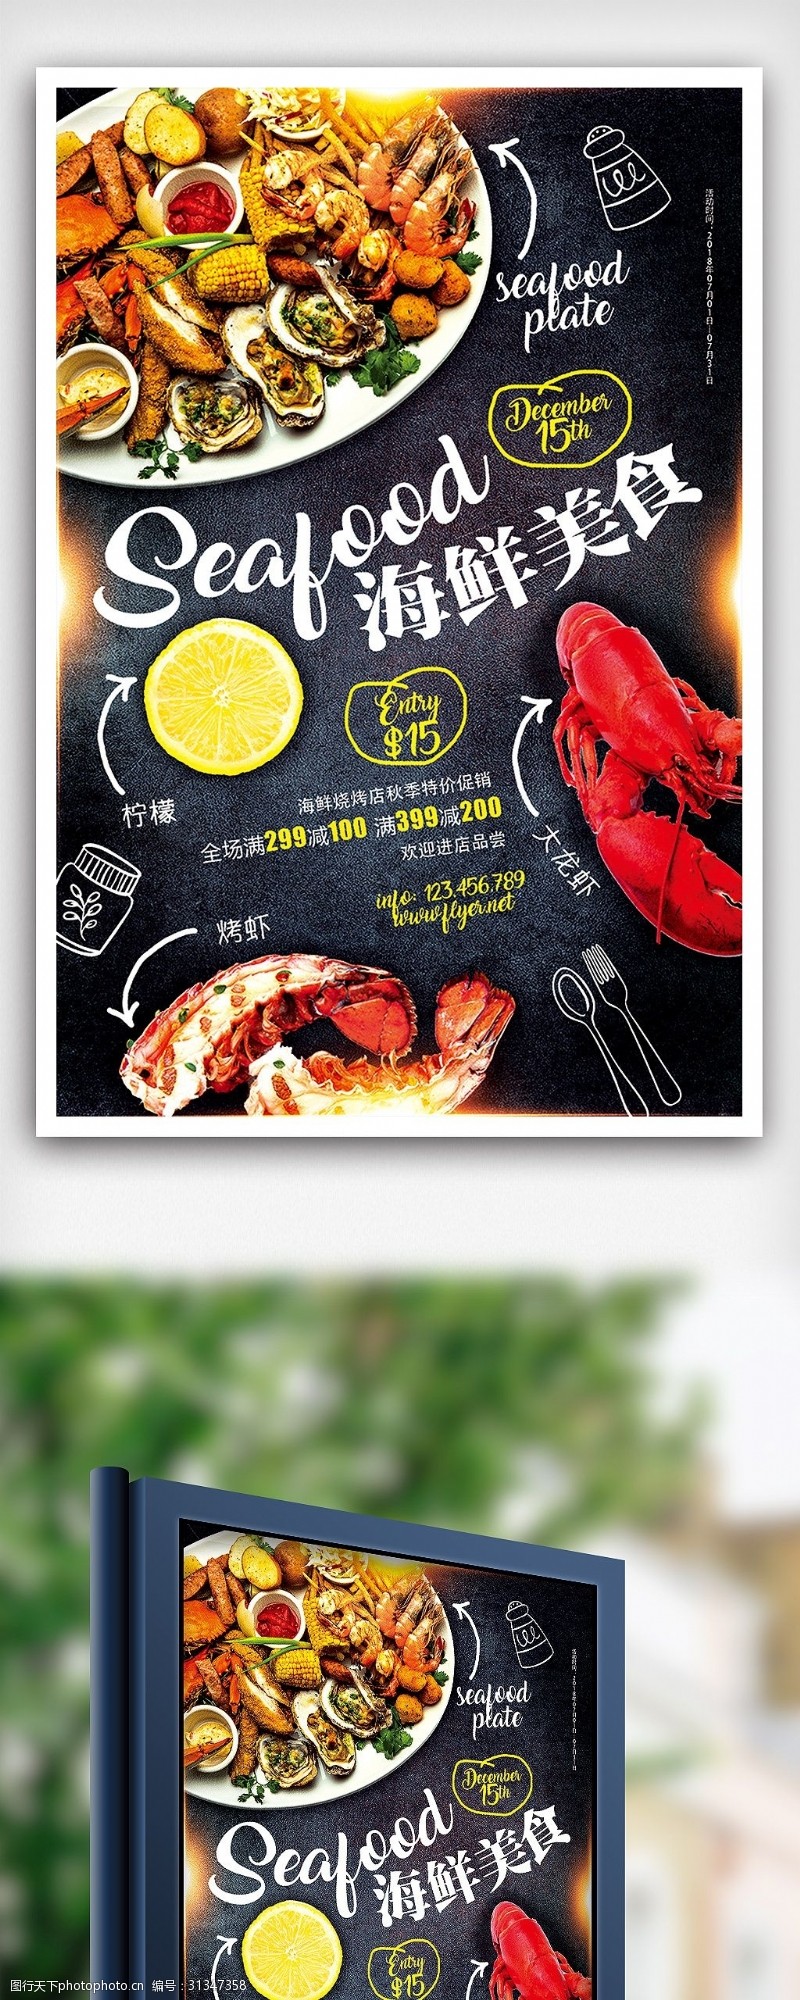 海鲜模板下载精品美食海鲜店促销餐饮海报